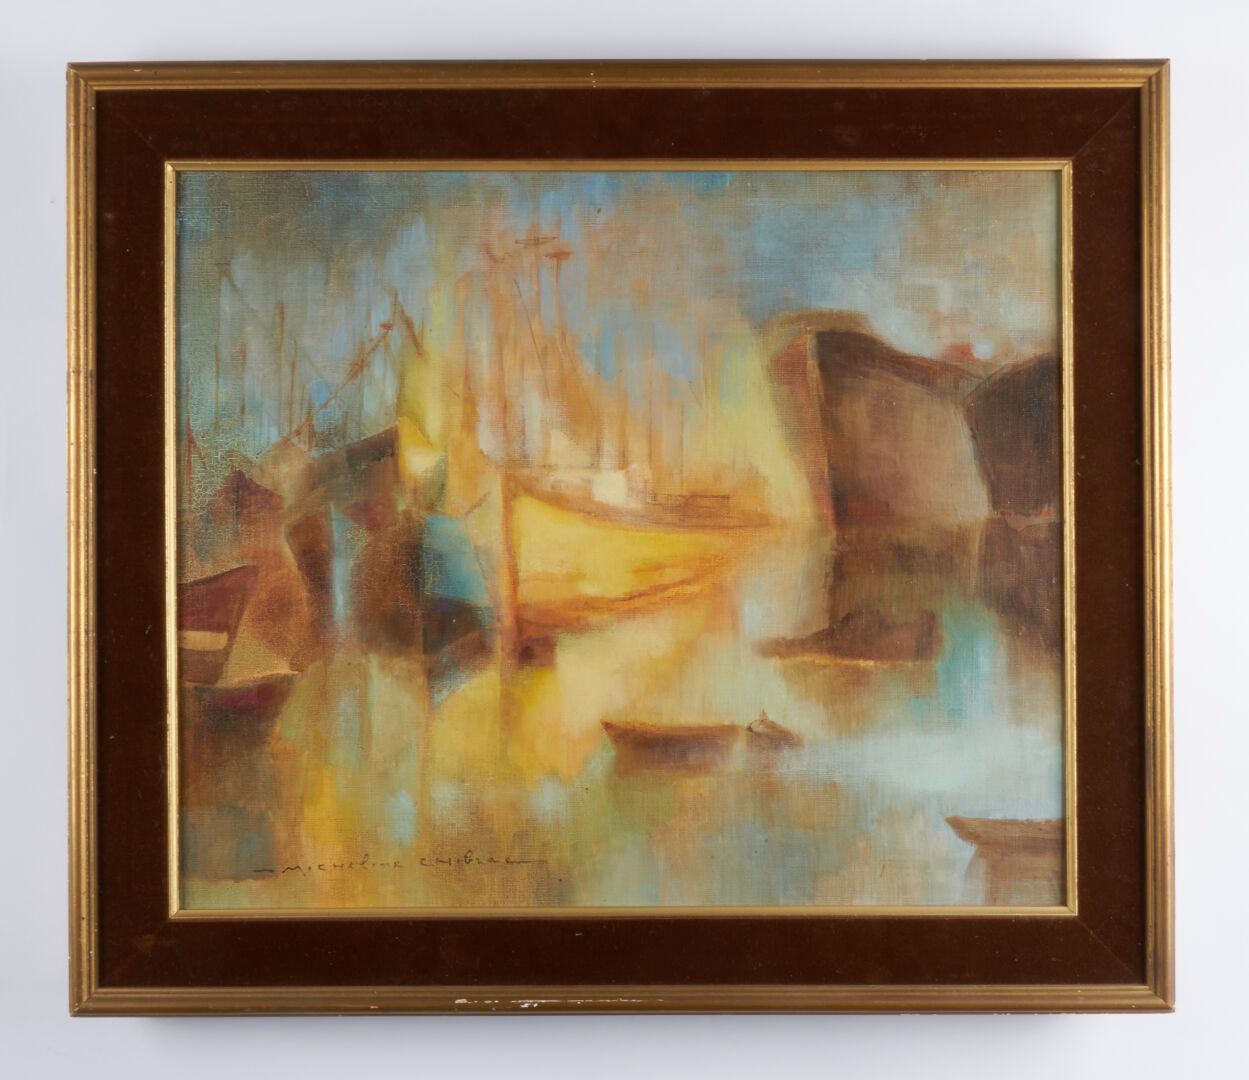 Null 希布拉克-米舍利娜 (生于1912年)

"左下角签名的布面油画 - 46x55